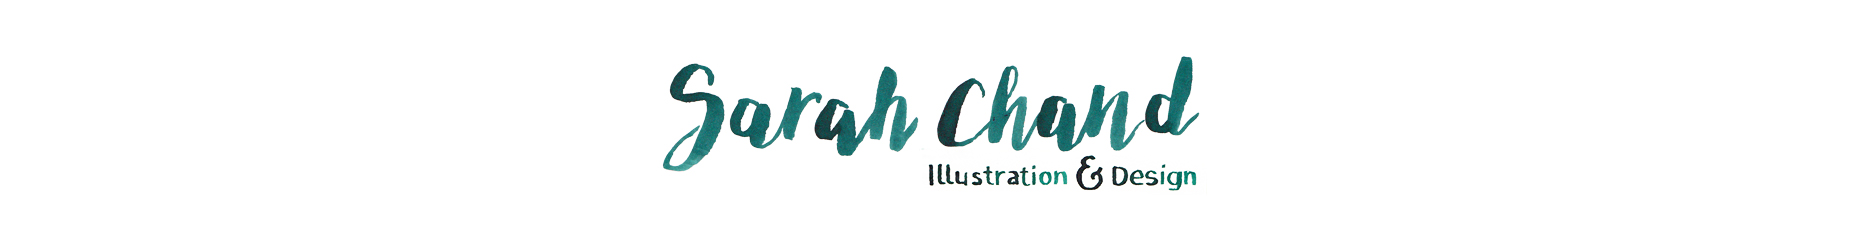 Sarah Chand Logo